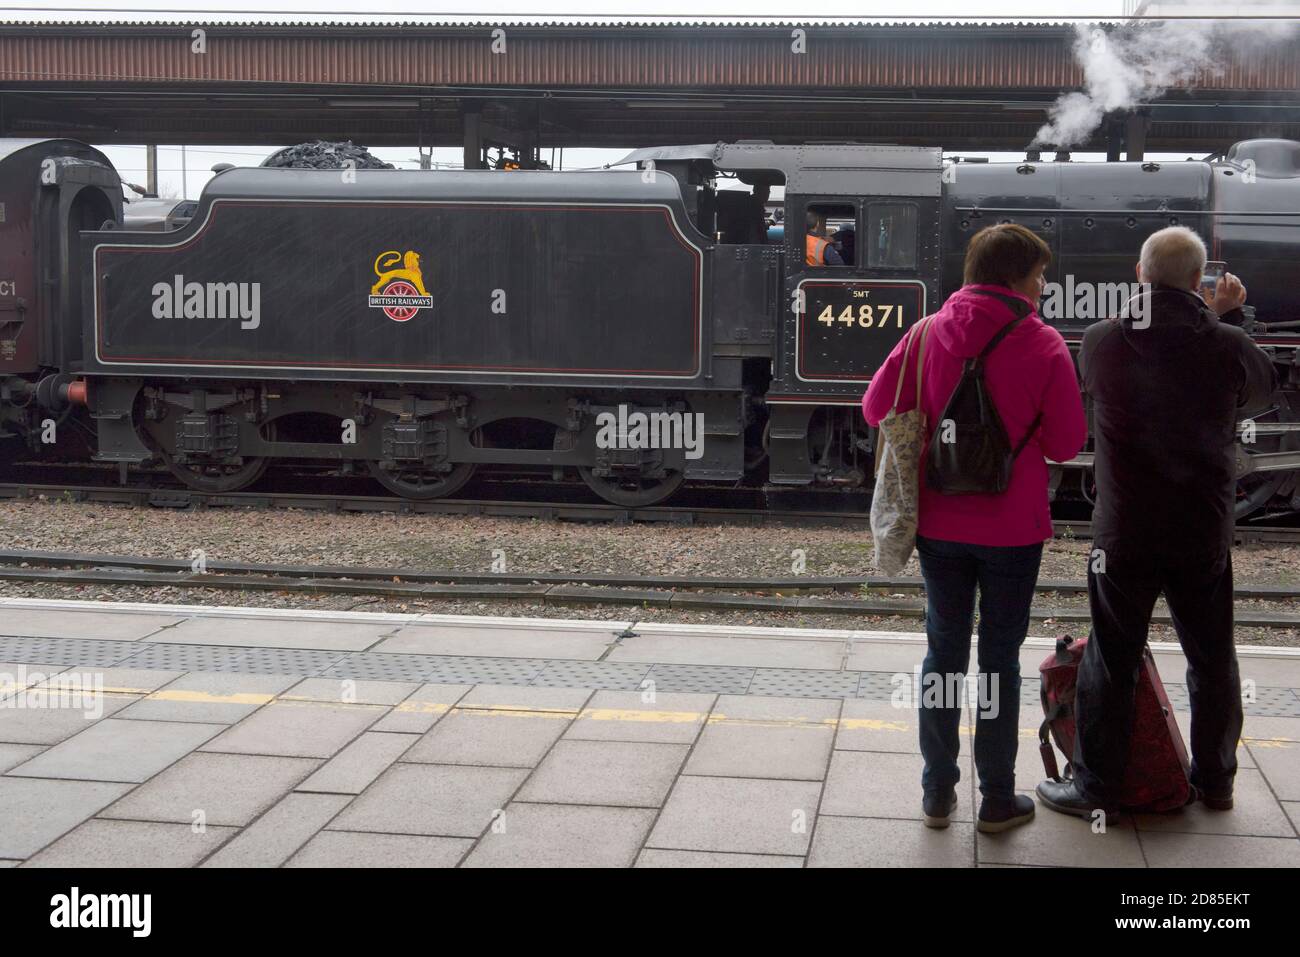 Dampflokomotive Stanier Black Five No 44781, steht im Bahnhof York, nachdem sie mit einem Spezialzug aus Norwich angekommen ist, Stockfoto